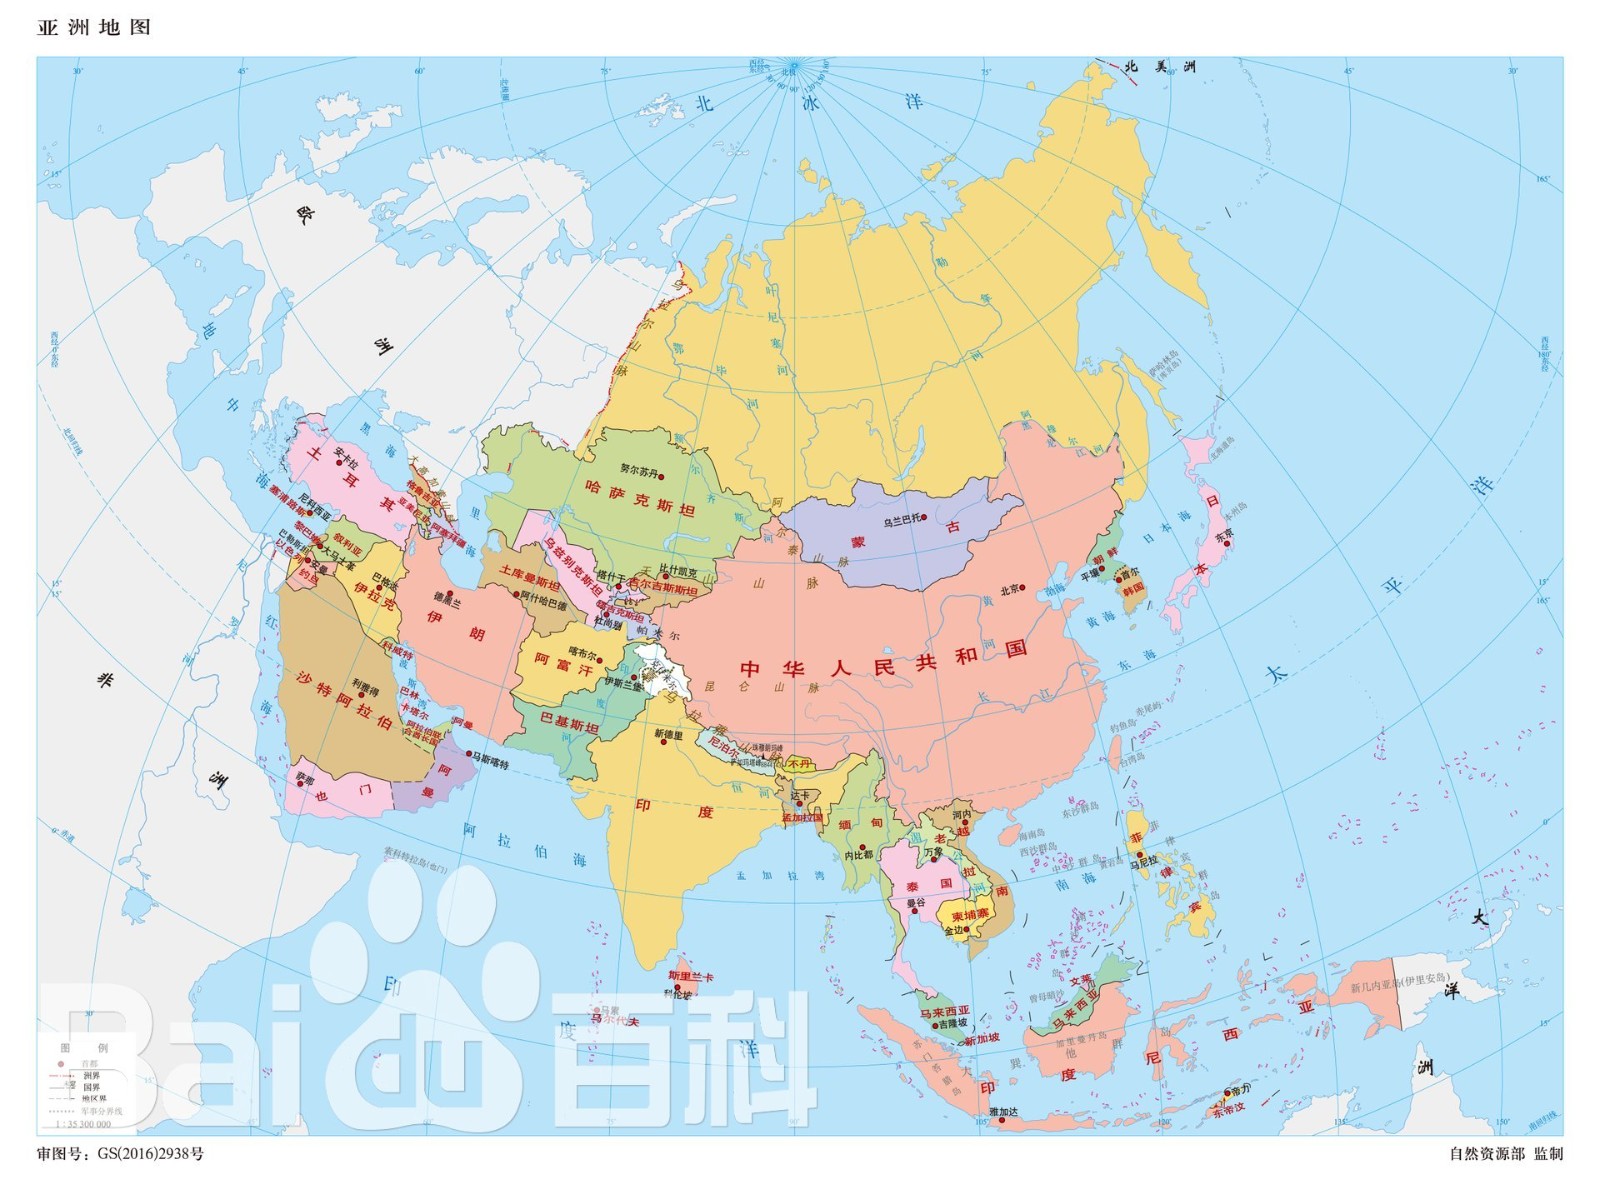 亚洲的六大地理分区